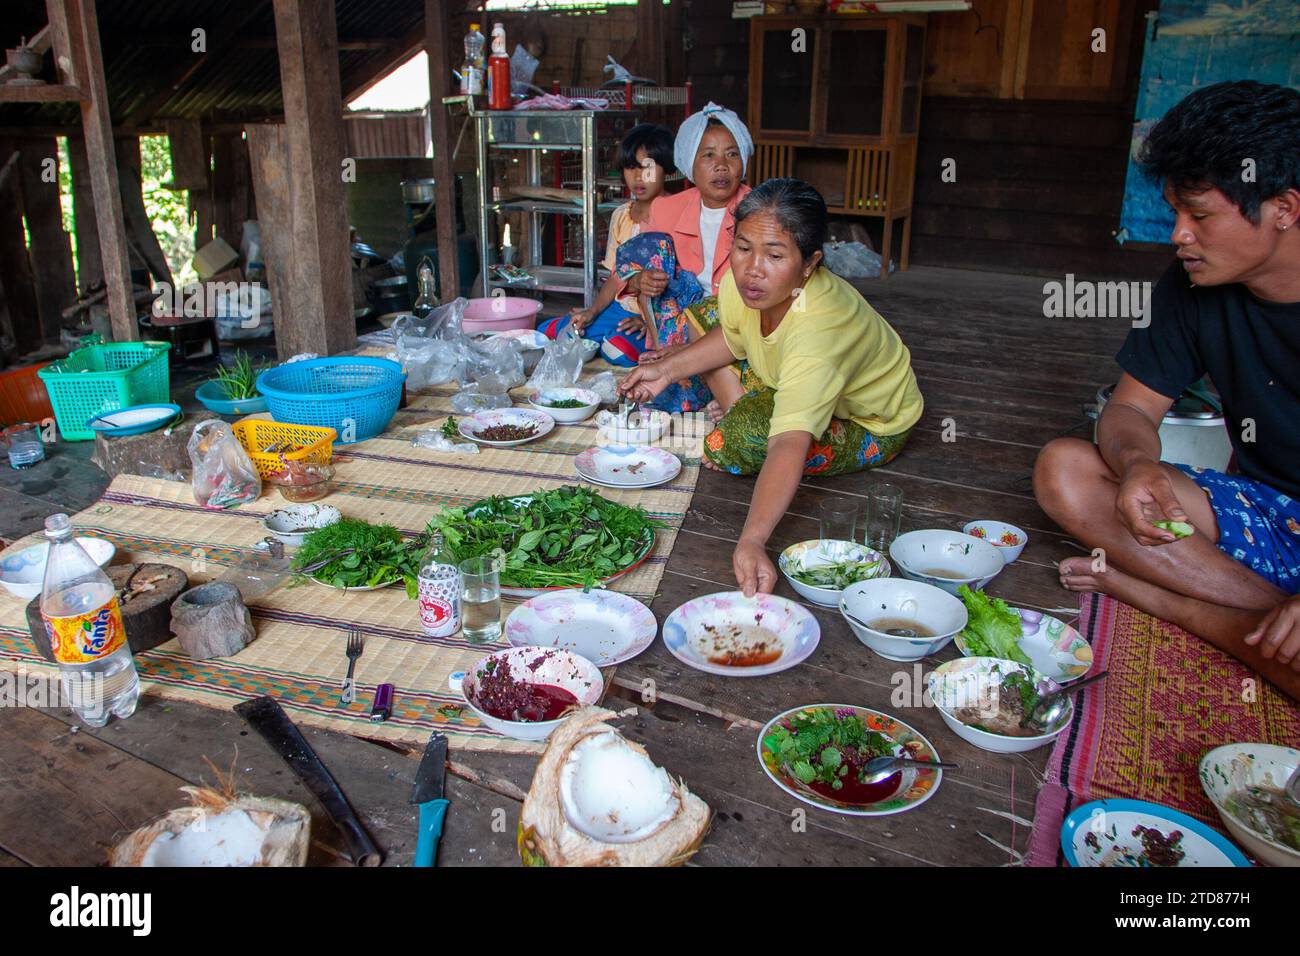 Famiglia thailandese che sta cenando nel villaggio delle province di Isan nella Thailandia settentrionale Foto Stock